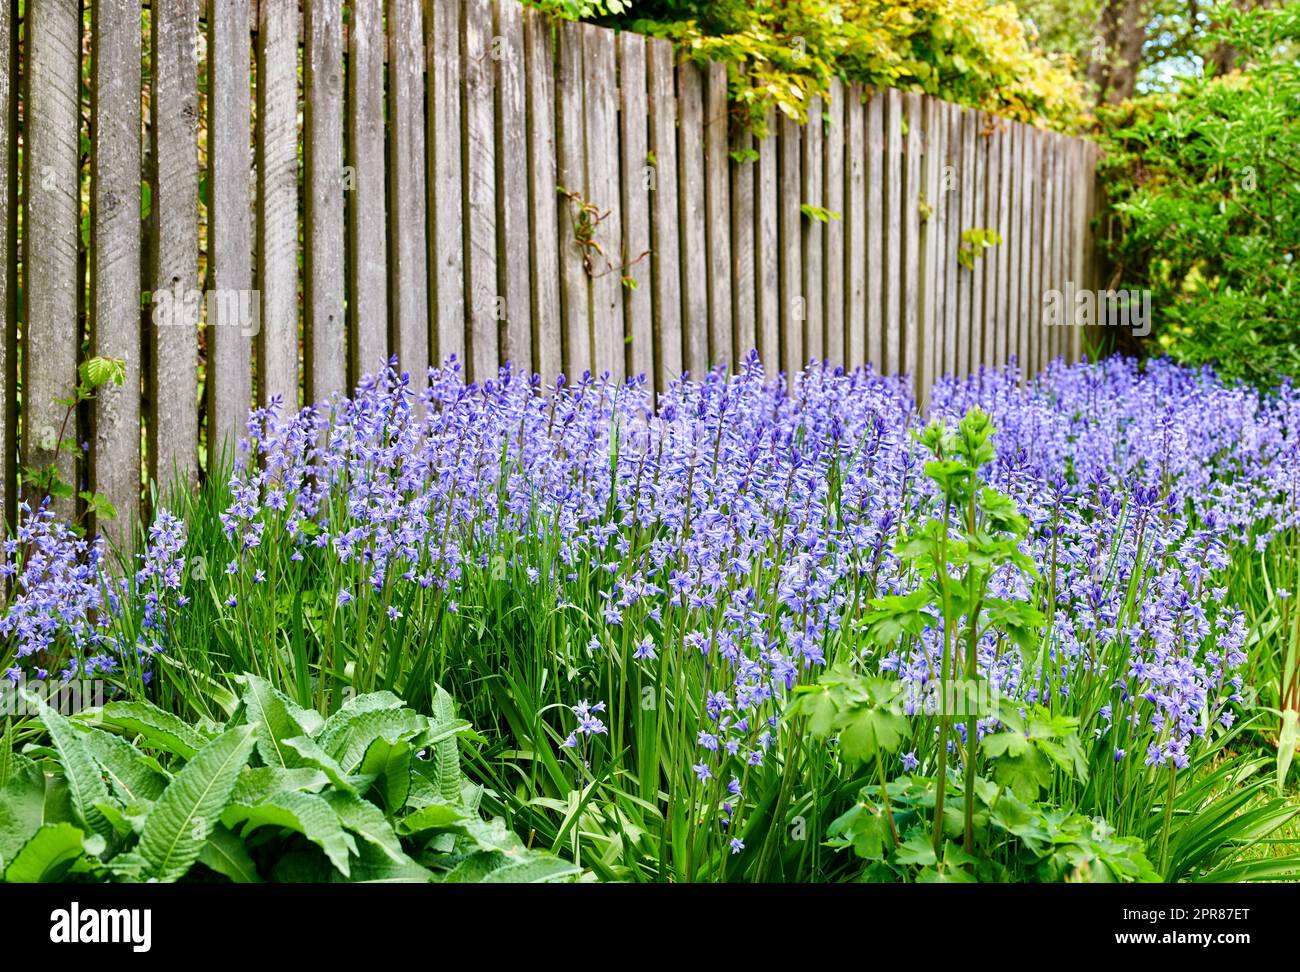 Ein lebhafter Haufen Bluebell-Blumen, die an einem Sommertag in einem Garten wachsen. Im Frühling blühen in der Natur farbenfrohe und leuchtend lila Pflanzen. Die Details des botanischen Laubs in einem Hof Stockfoto